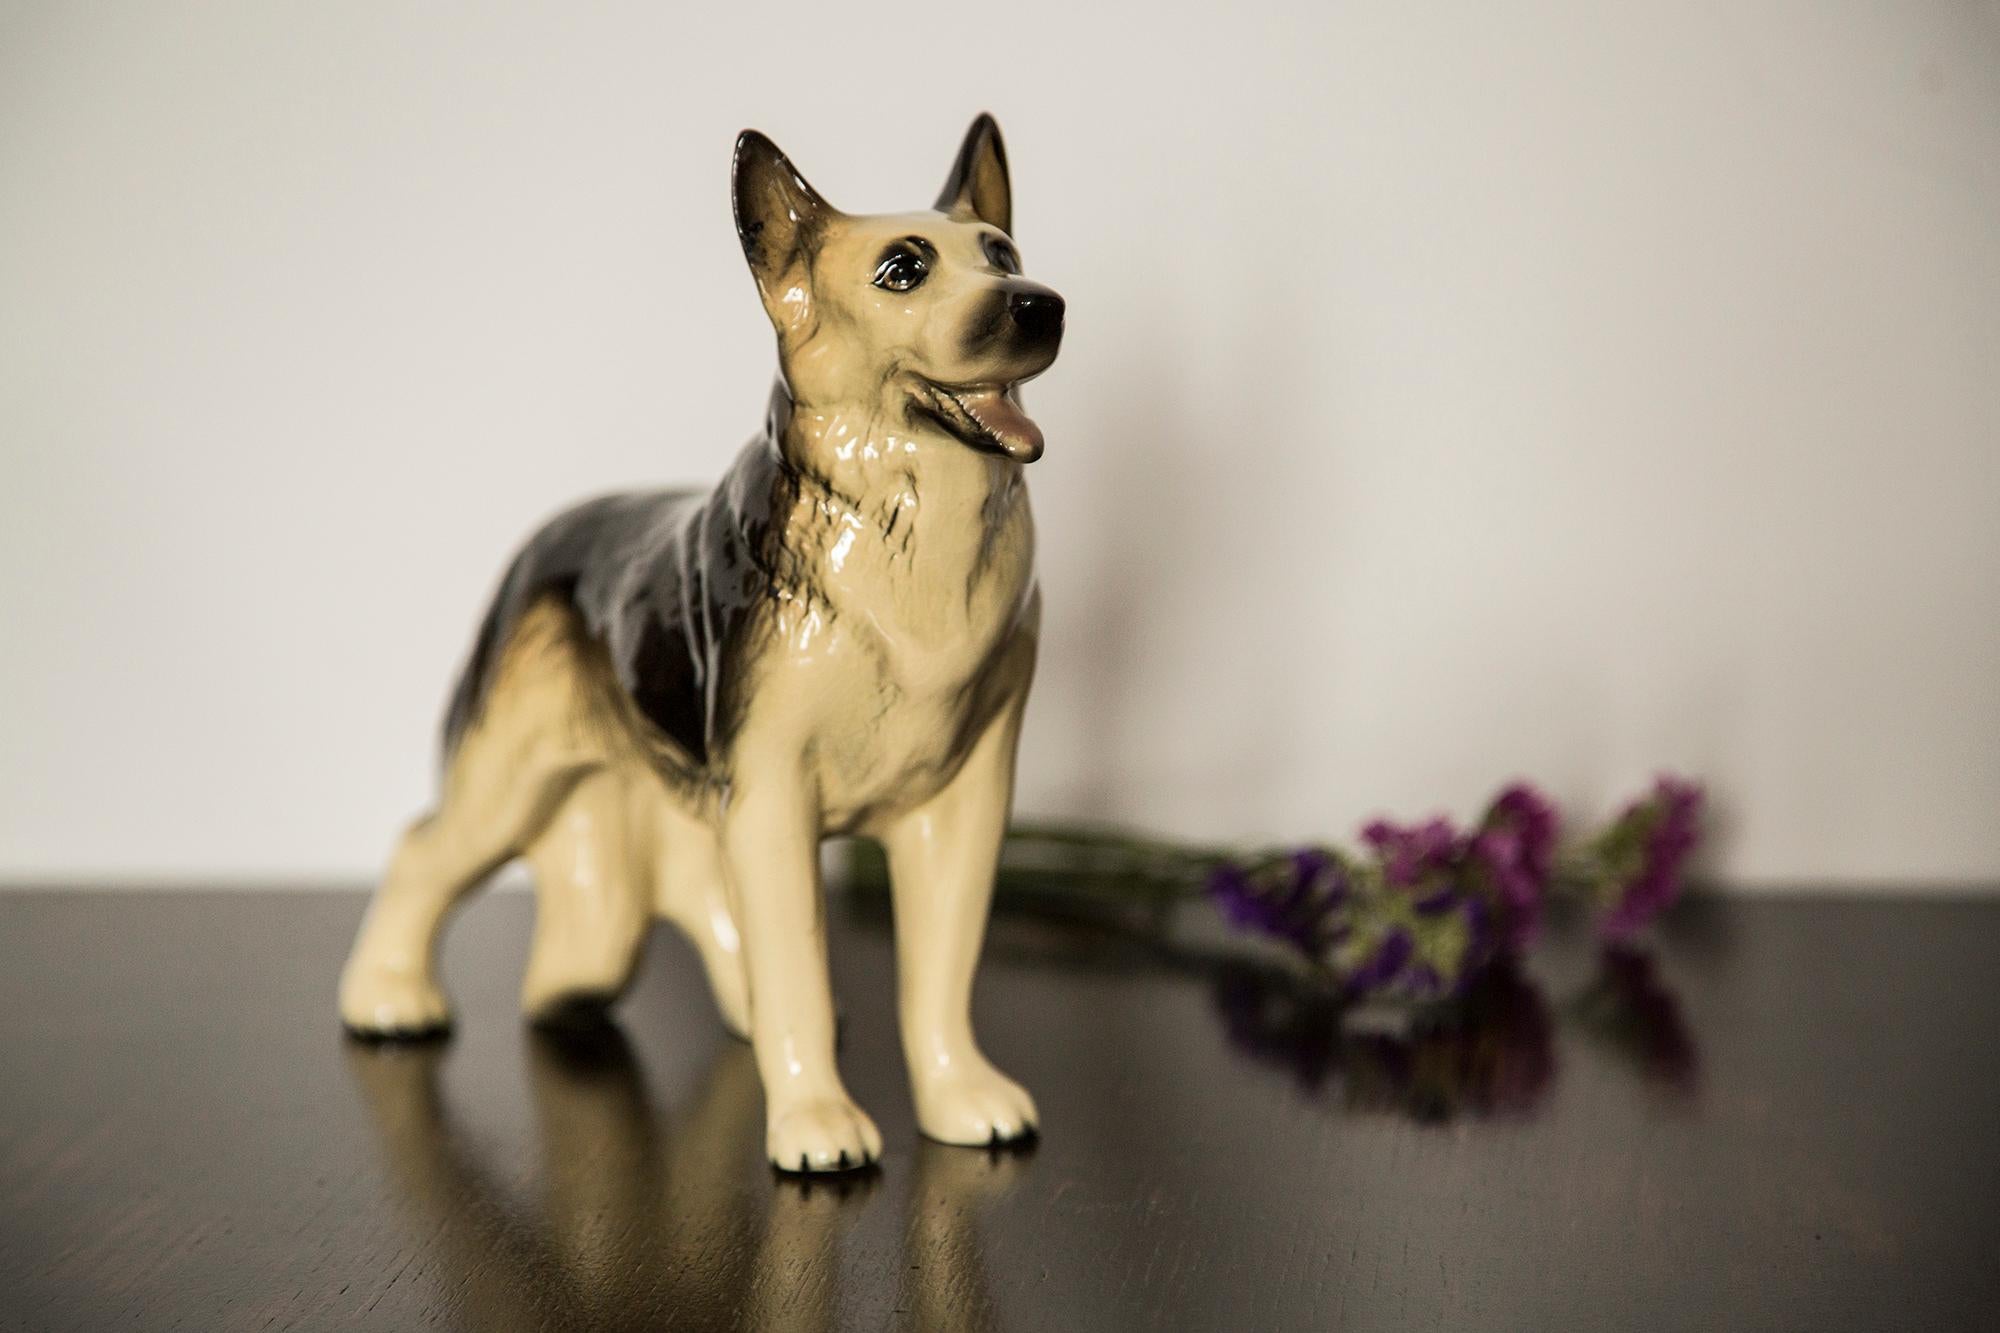 Bemalte Keramik, sehr guter originaler Vintage-Zustand. Keine Schäden oder Risse. Schöne und einzigartige dekorative Skulptur. Deutsche Schäferhund-Skulptur wurde in England hergestellt. Nur ein Hund verfügbar.